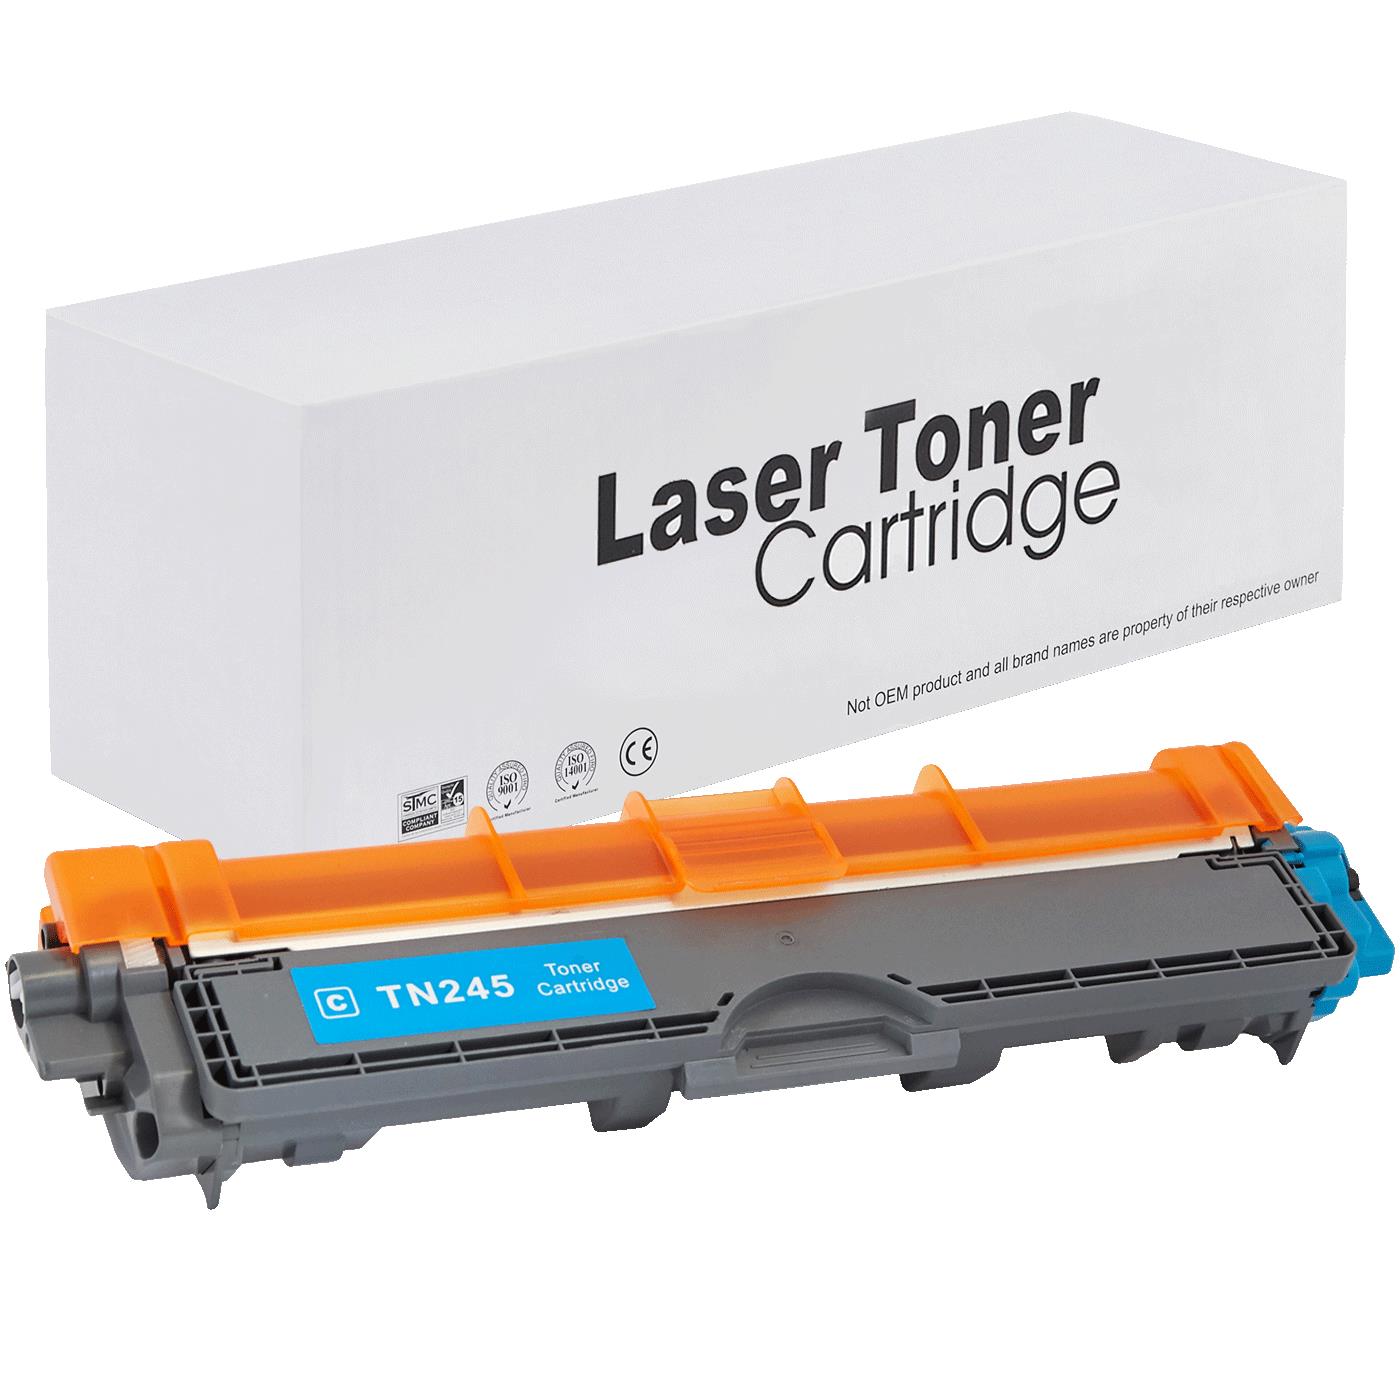 съвместима тонер касета за принтери и печатащи устройства на Brother MFC-9130 CW Toner BR-245C | TN245C / TN241C. Ниски цени, прецизно изпълнение, високо качество.